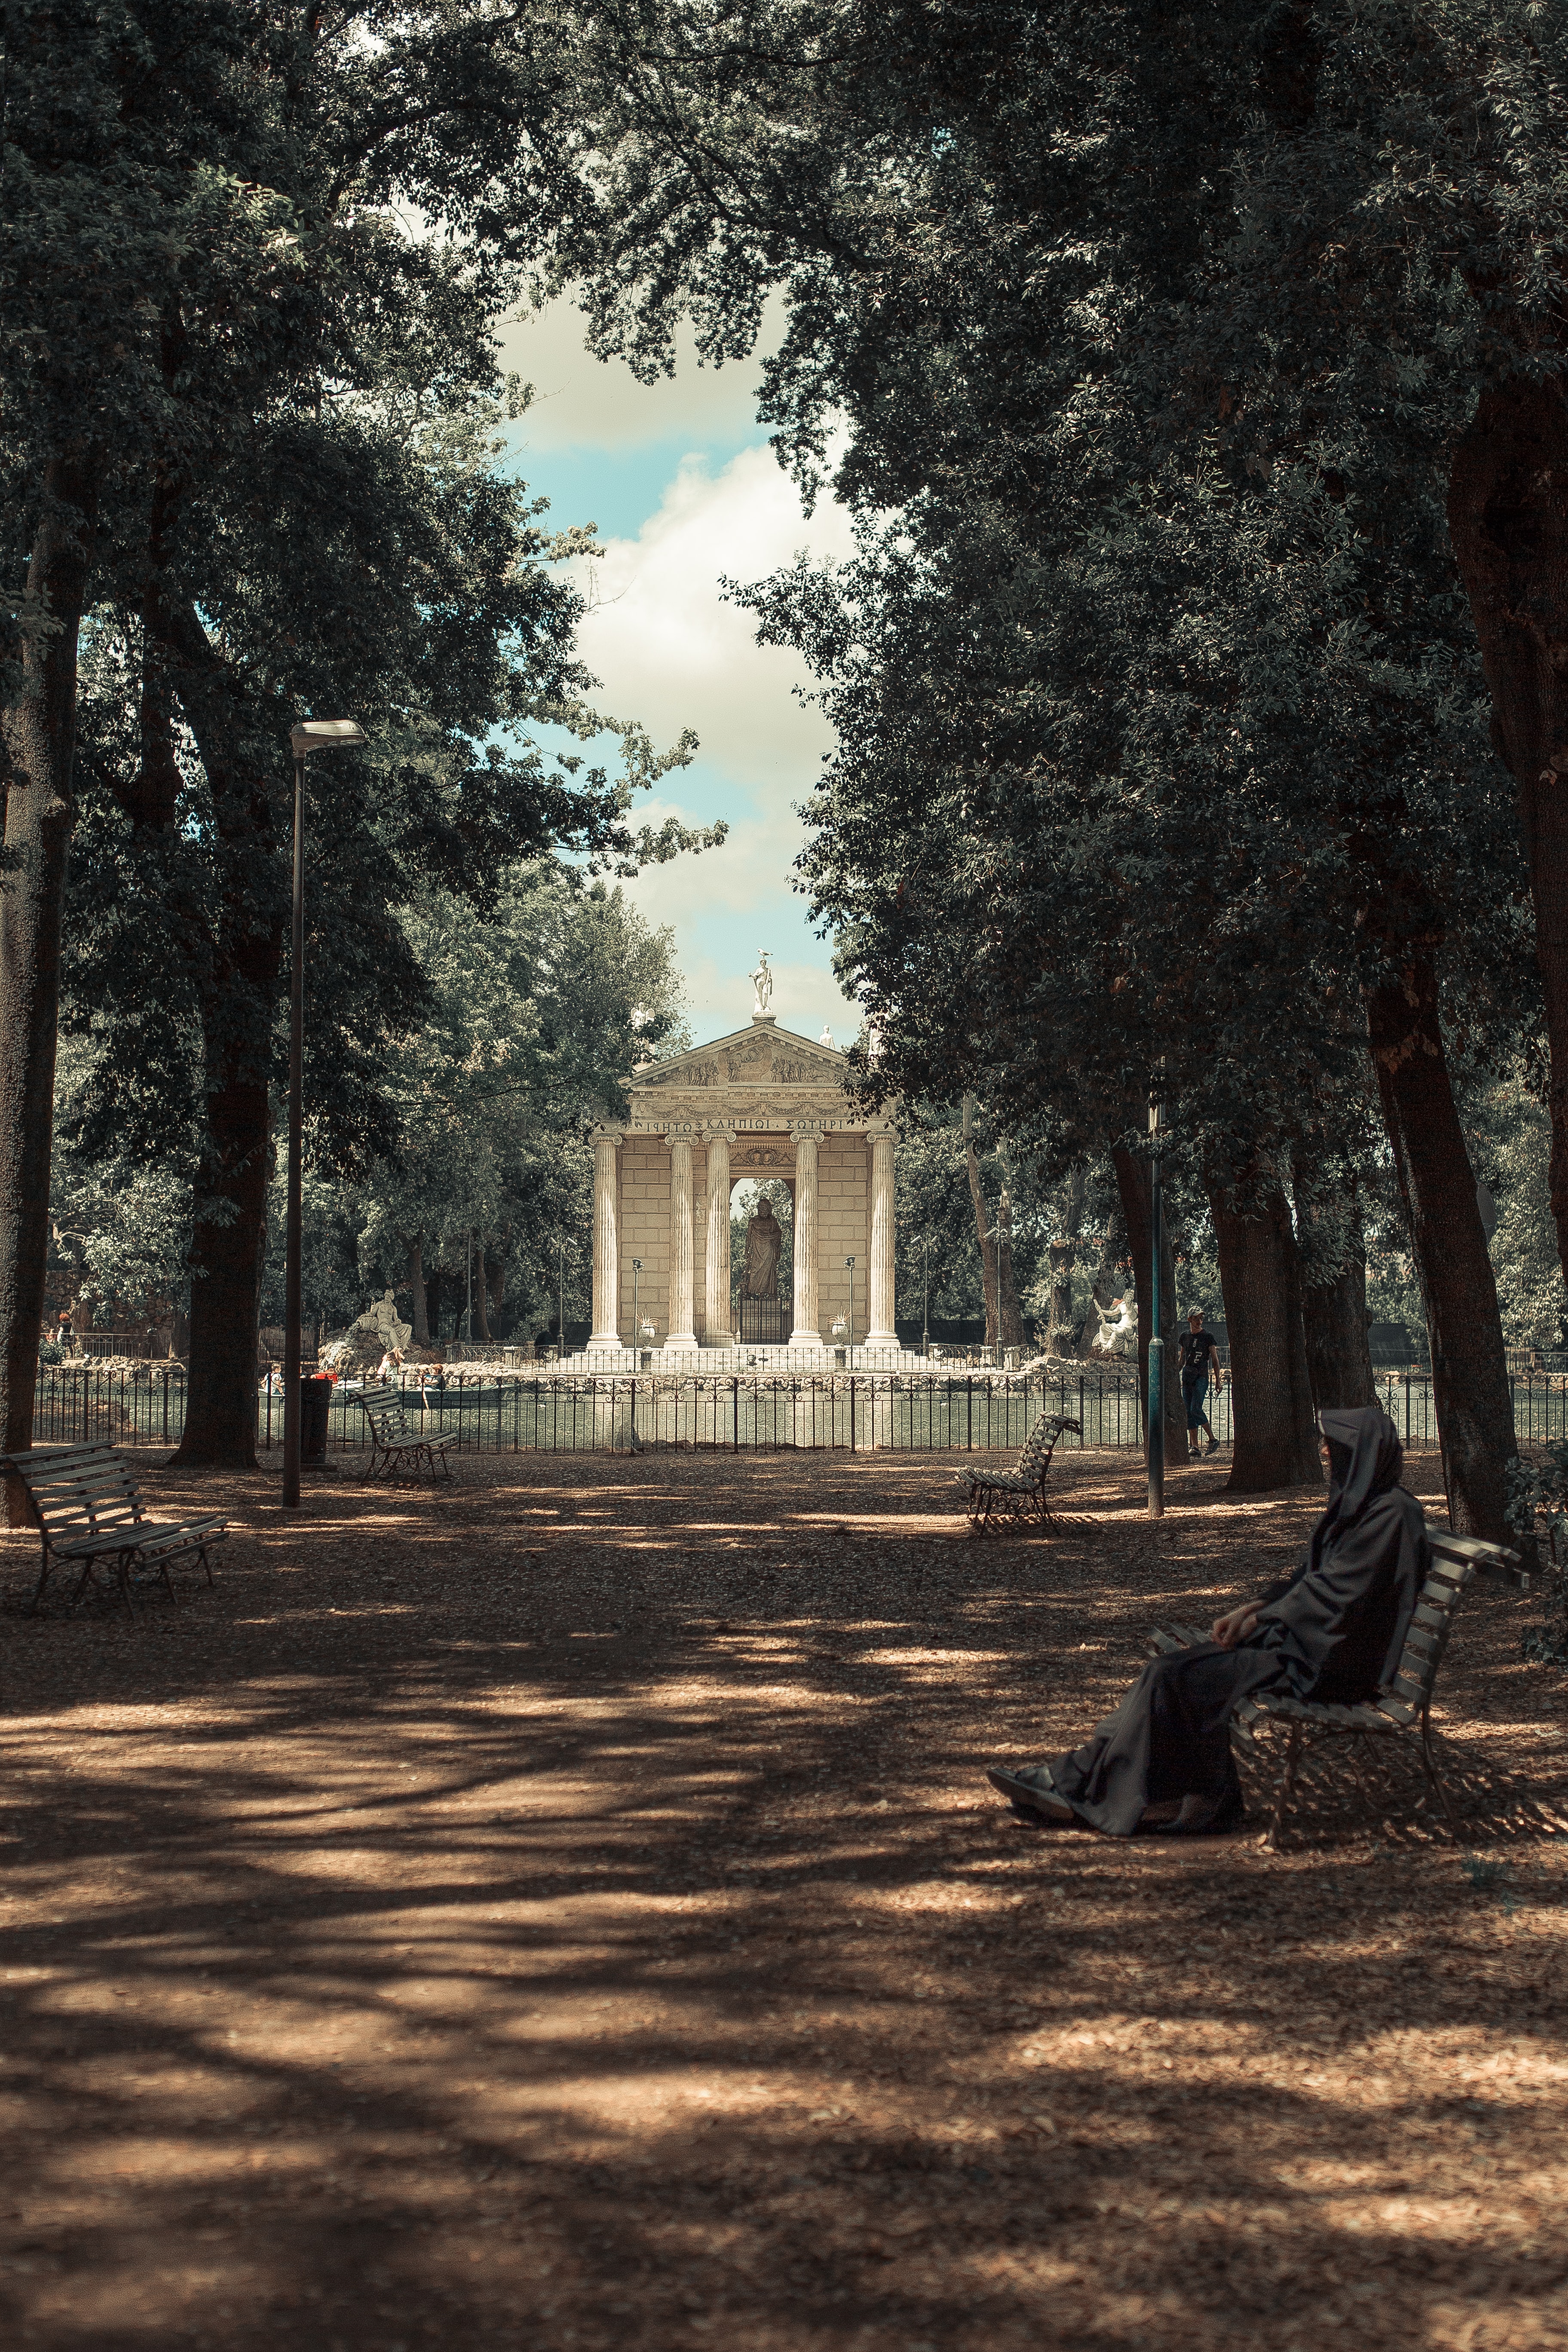 이탈리아 로마의 한 공원에서 나무들이 즐비하고 한 가운데 로마의 작은 신전이 서있는 모습